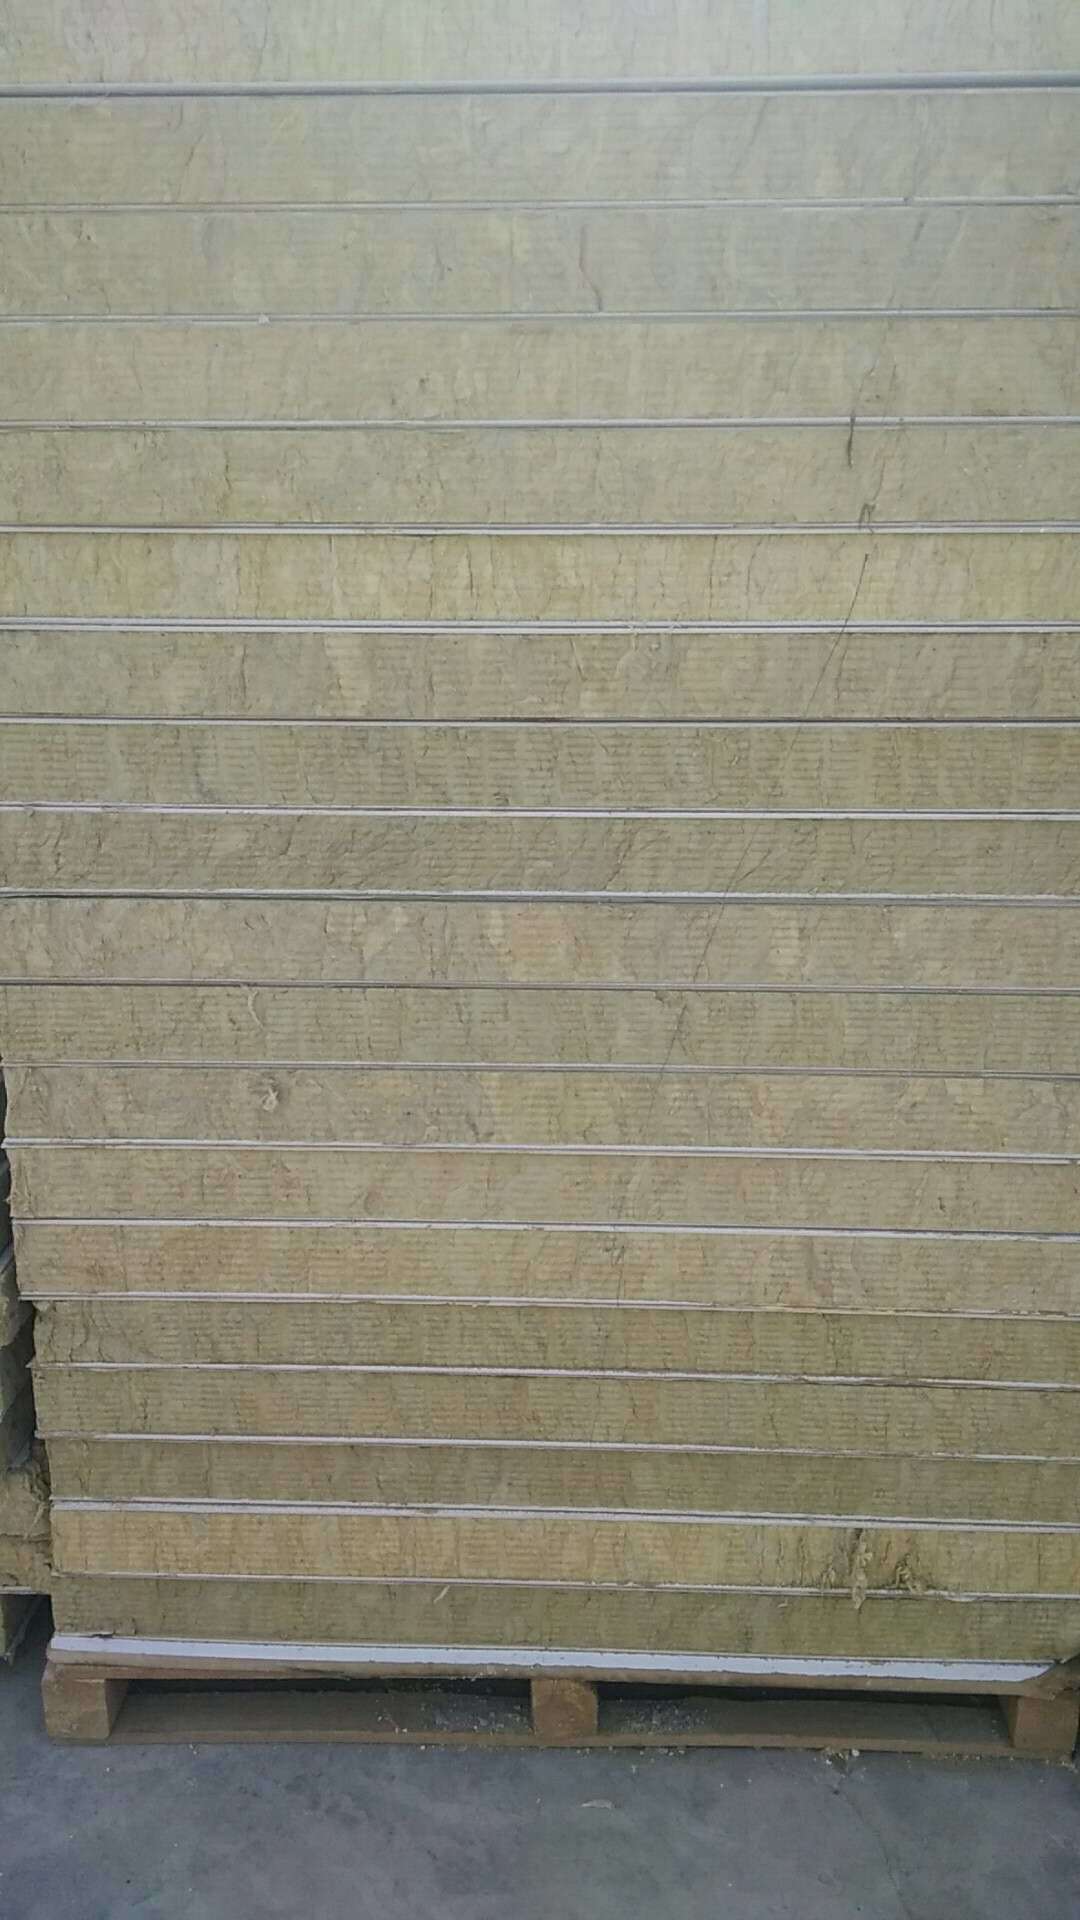 保温一体板厂家 外墙装饰一体板 岩棉硅钙板复合一体板 真石漆仿石一体板 镀铝锌岩棉一体板生产厂家示例图1